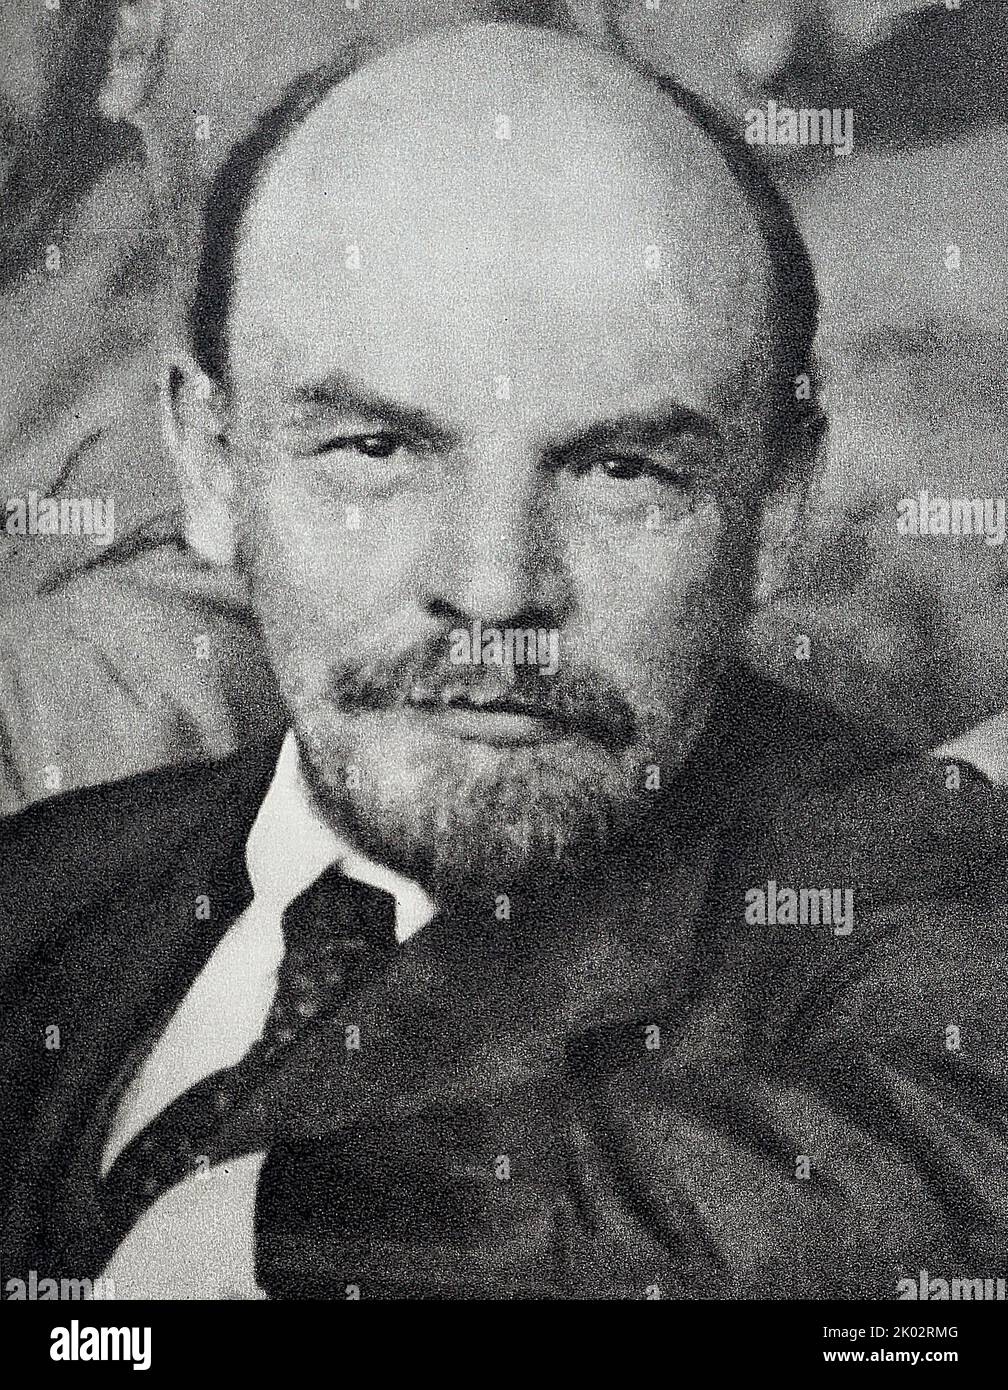 Vladimir Lénine parmi les délégués de la dixième conférence entièrement russe. RCP (bolcheviks) dans la salle Sverdlovsk du Kremlin. 1921, 26-28 mai. Moscou Banque D'Images